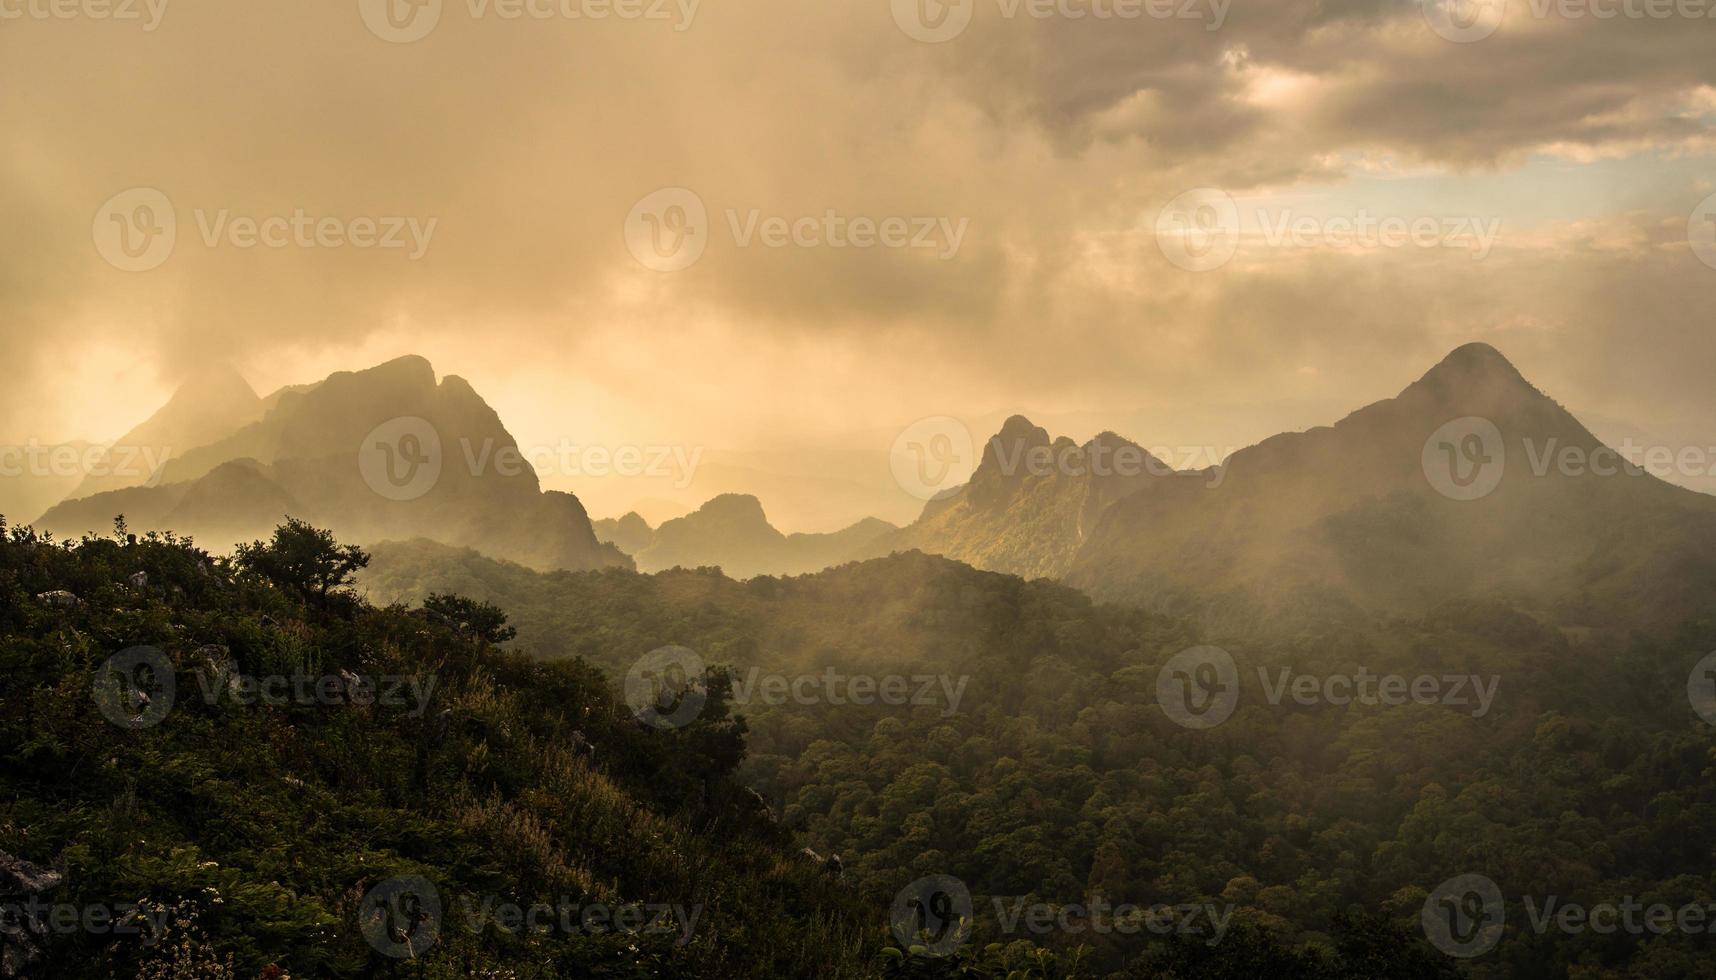 vue panoramique sur la chaîne de montagnes de chiang dao à chiang mai, la région nord de la thaïlande. doi luang chiang dao surnommée la dernière dent de l'himalaya s'élève majestueusement. photo